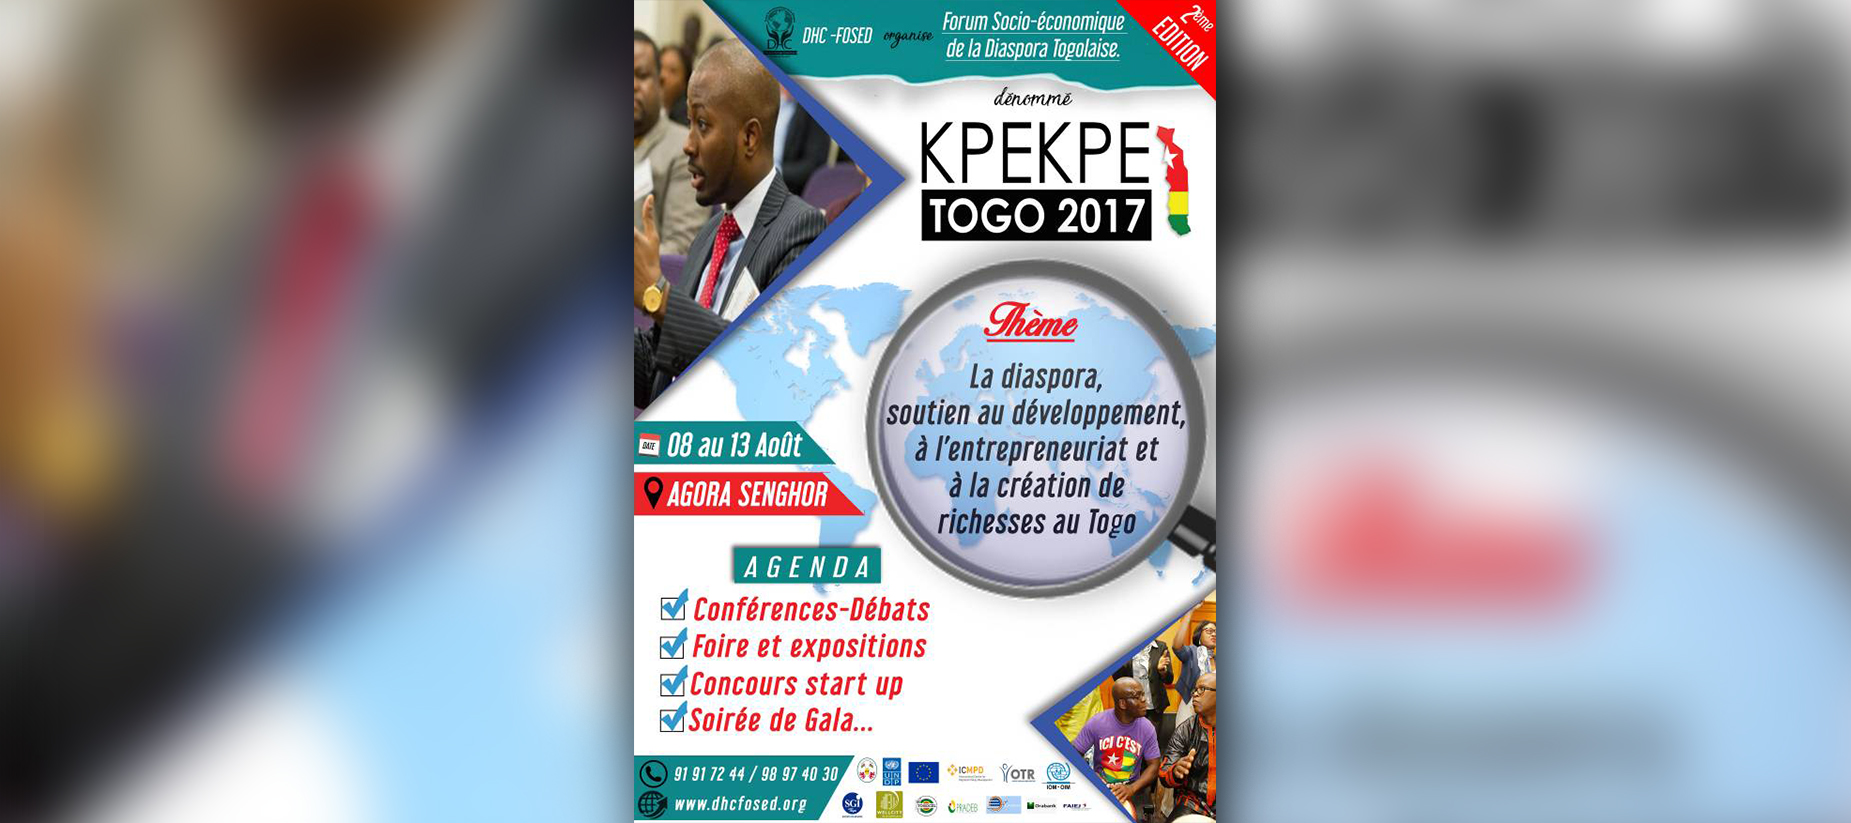 KPEKPE 2017: le Forum socio-économique de la Diaspora 